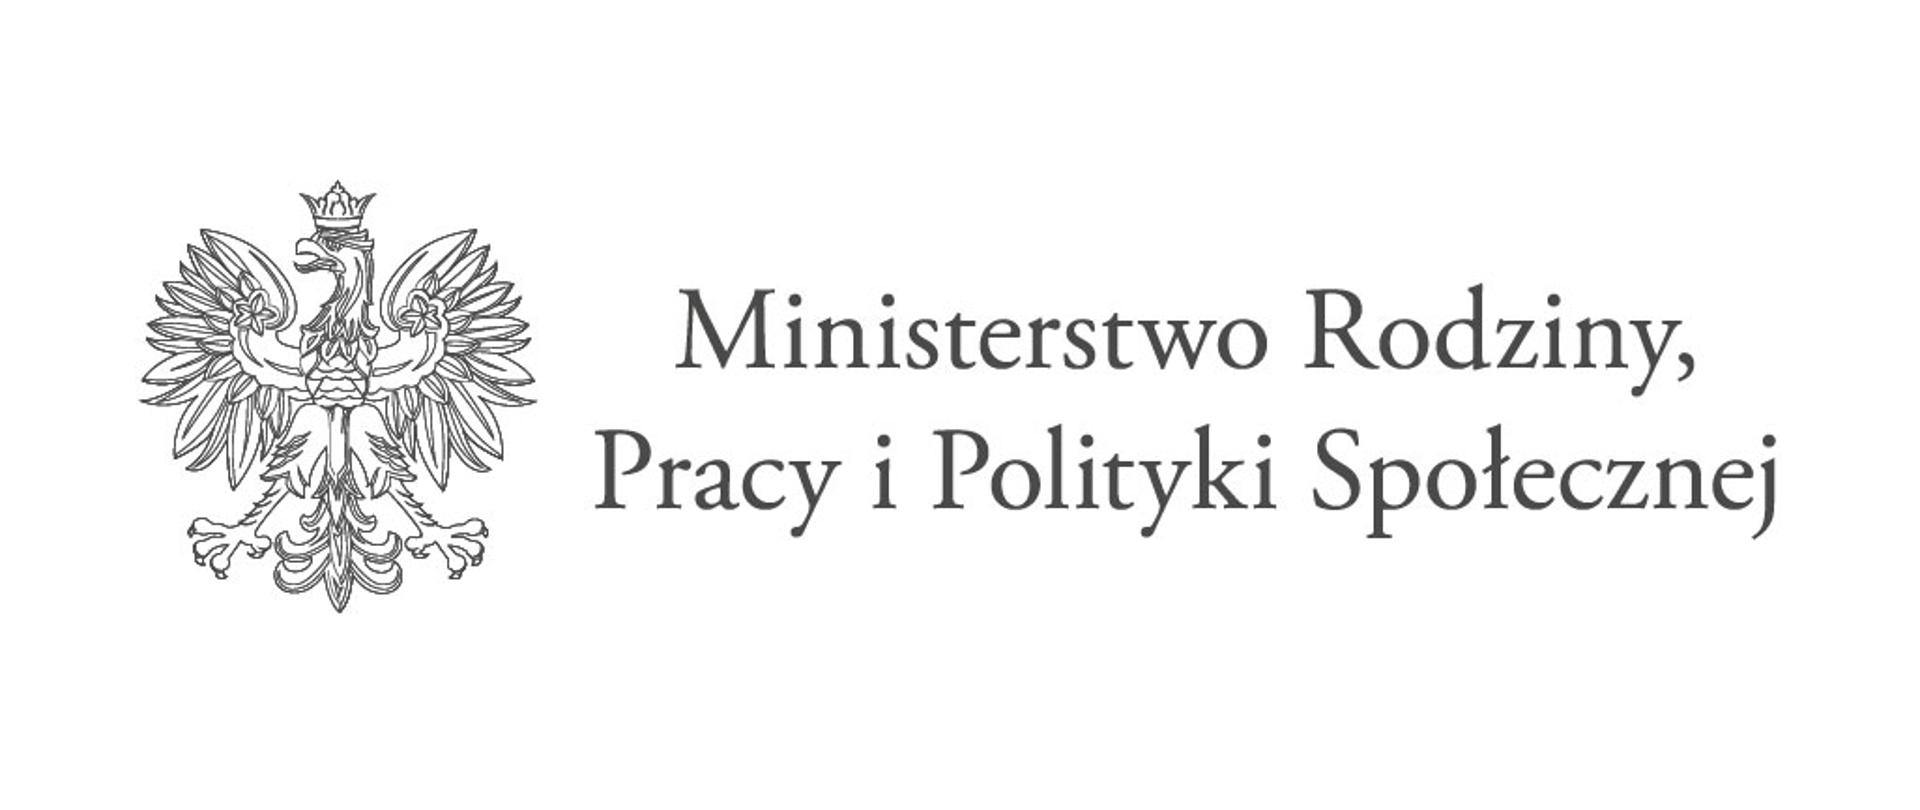 Ministerstwo Rodziny, Pracy i Polityki Społecznej (logo)